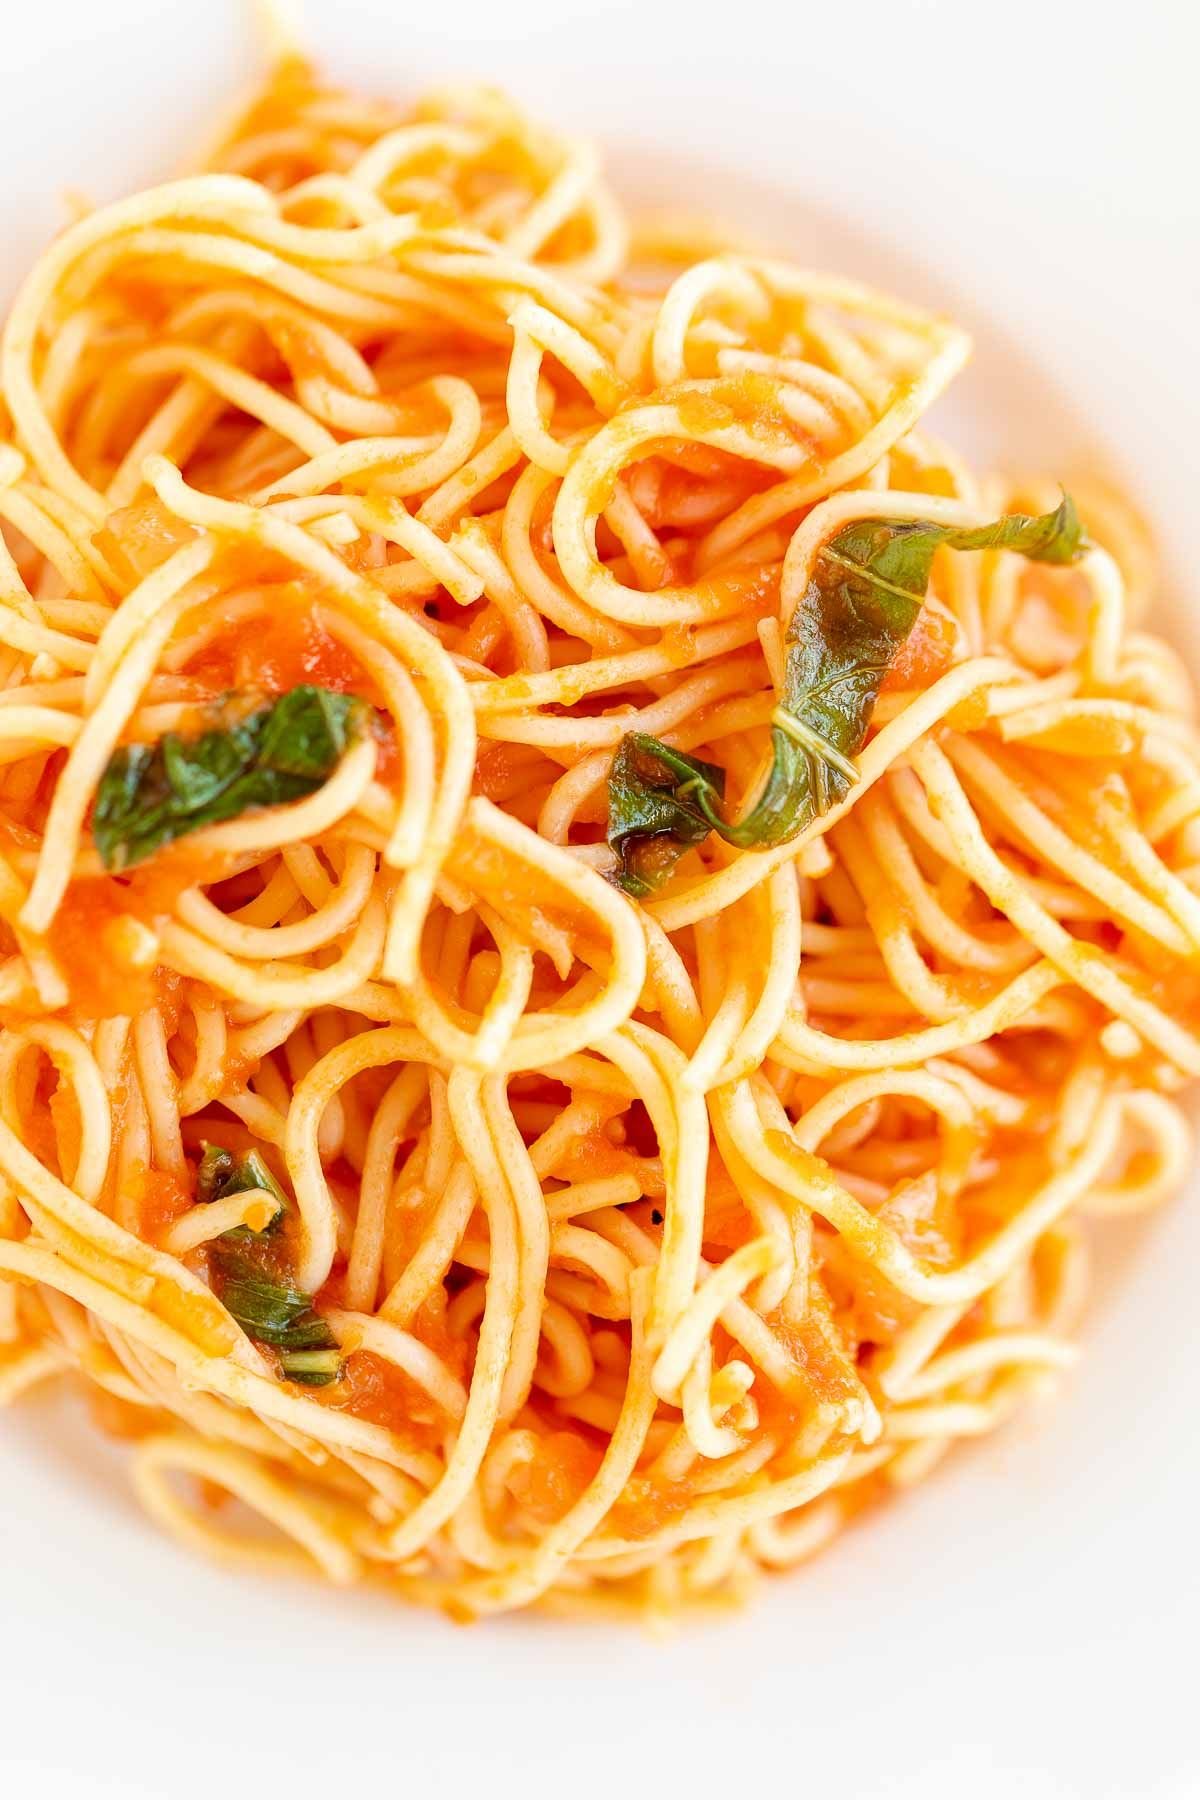 A plate of spaghetti in pomodoro sauce.